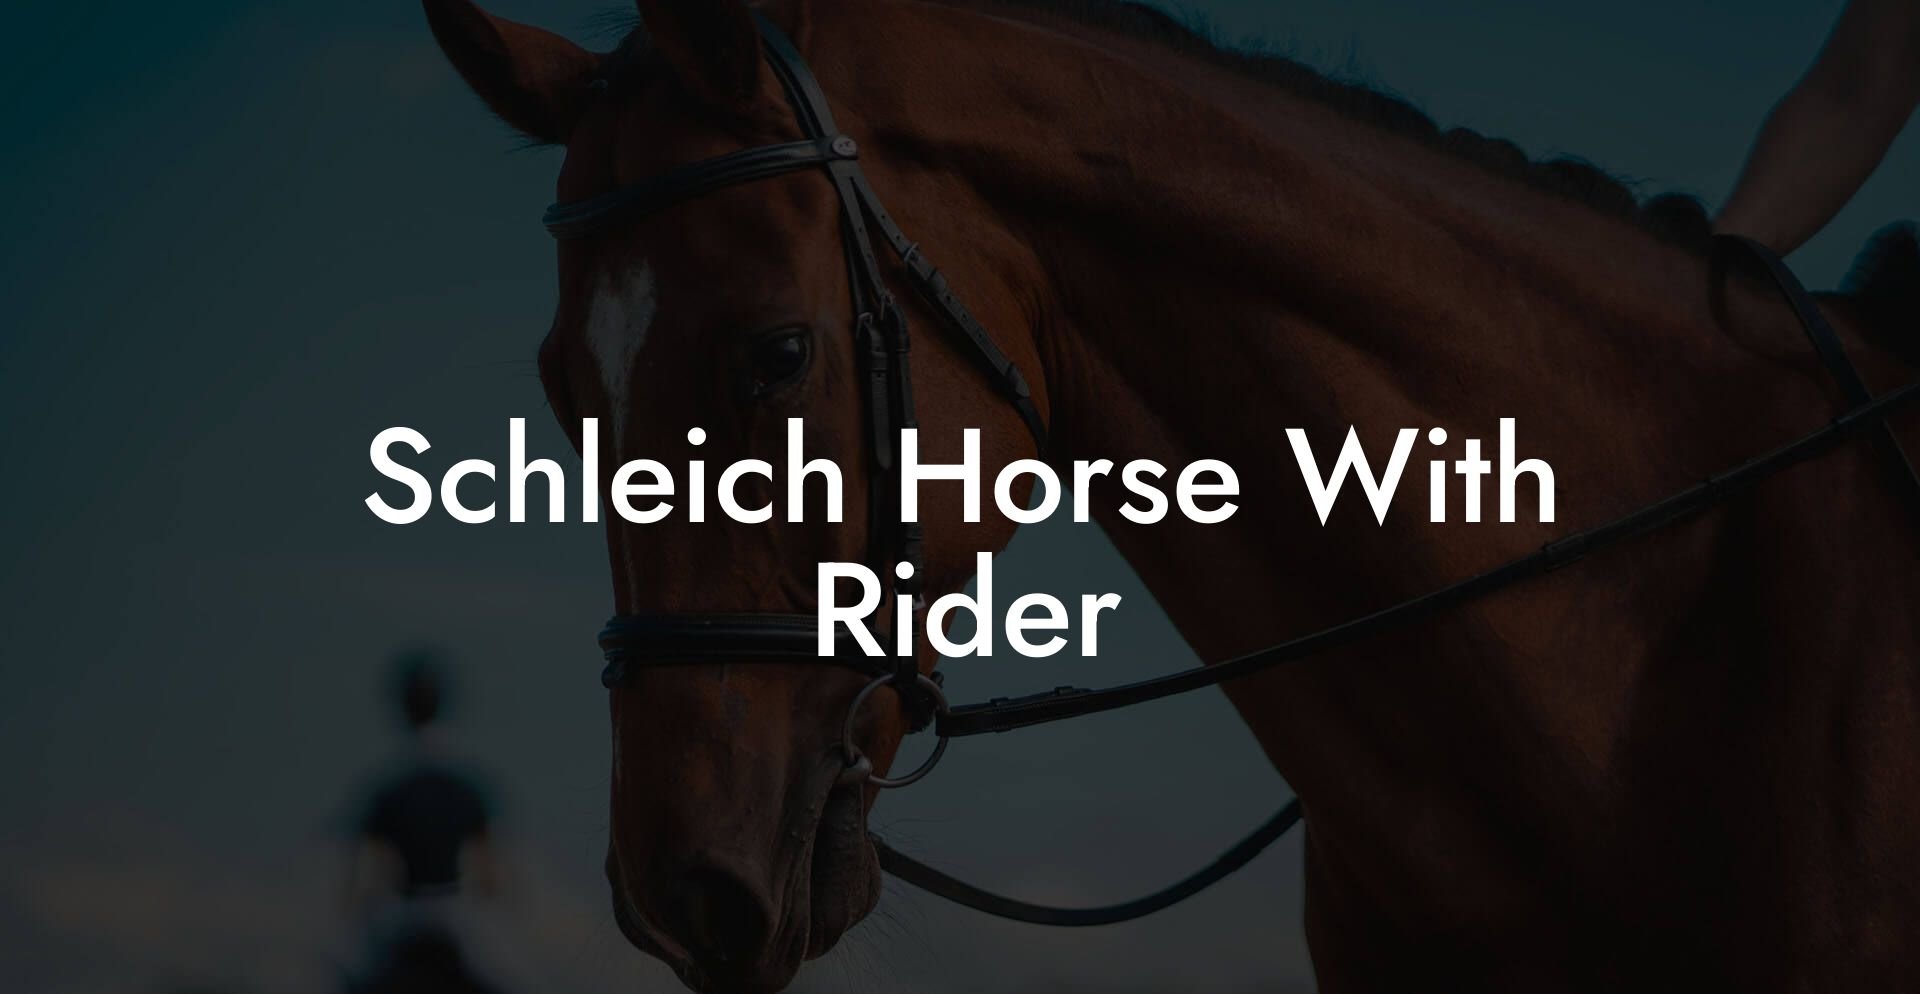 Schleich Horse With Rider